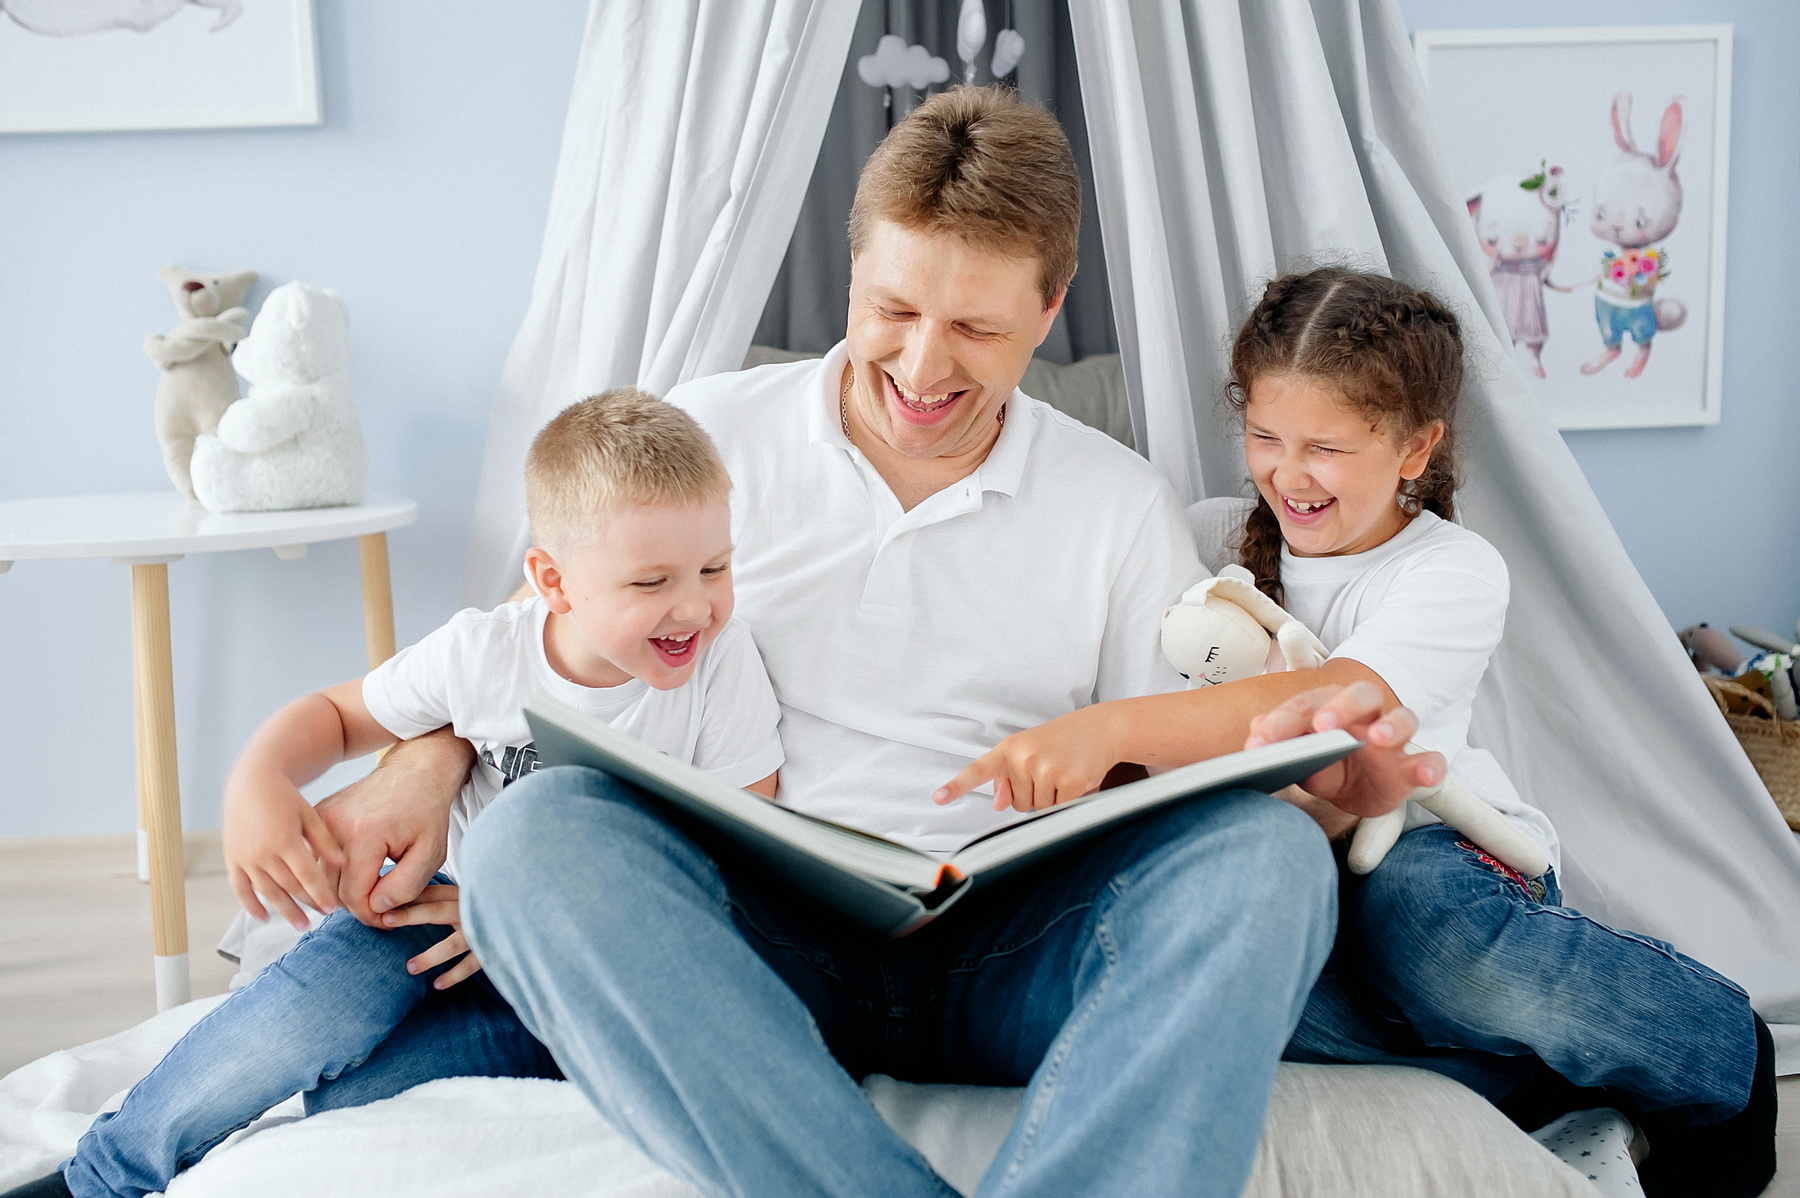 Папою паплю. Папа читает детям. Папа читает книгу детям. Читающая семья. Семейное чтение фотосессия.